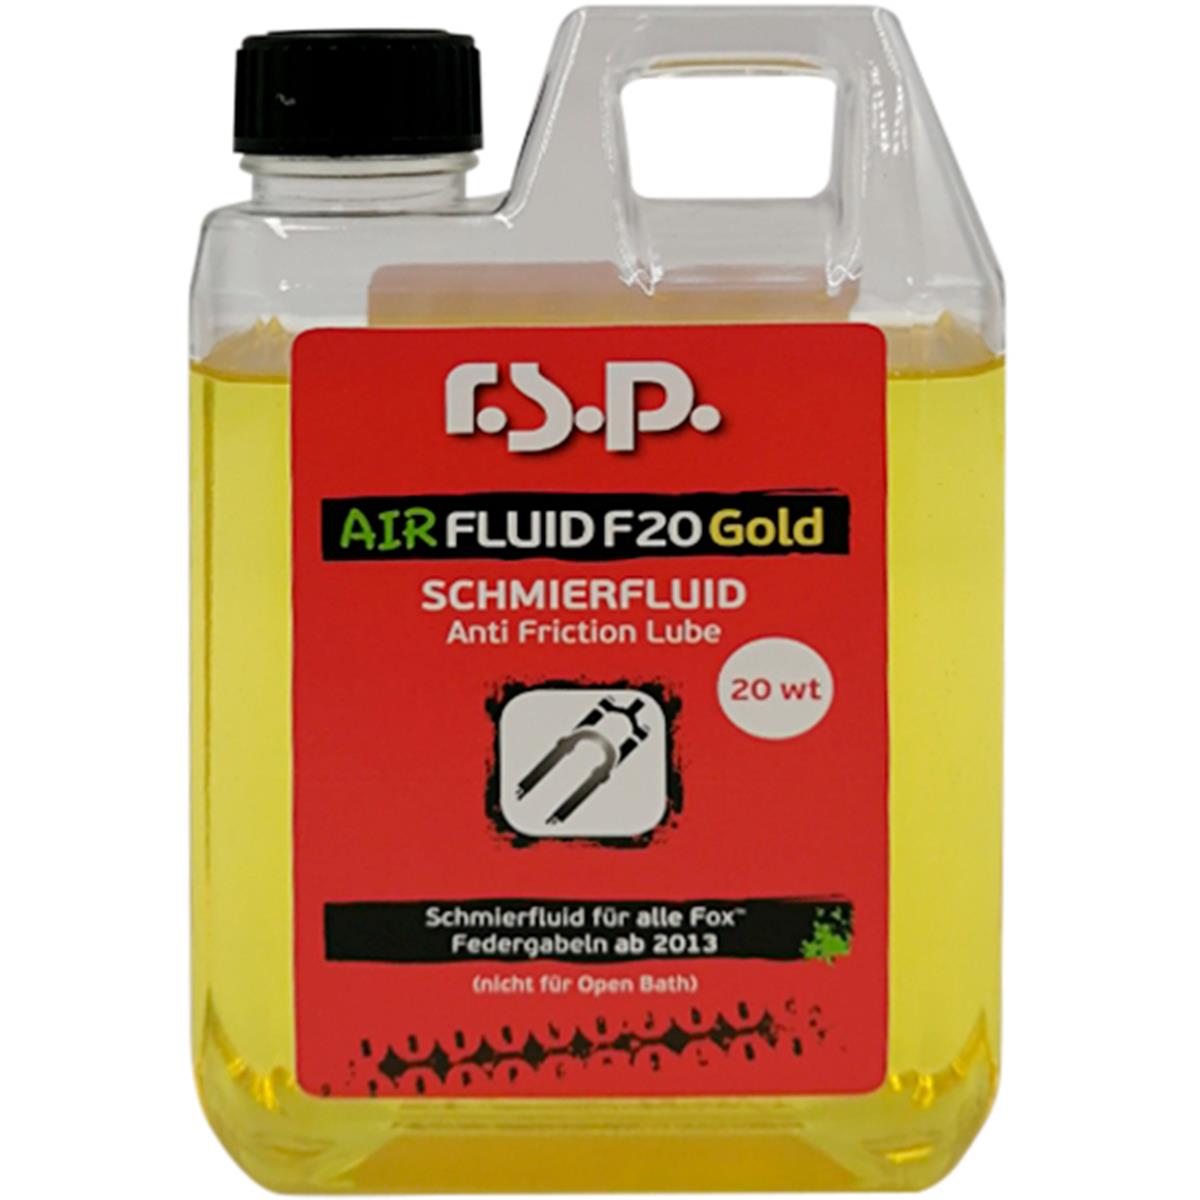 r.s.p. Suspension Oil Air Fluid F20 Gold 20 WT, 250 ml